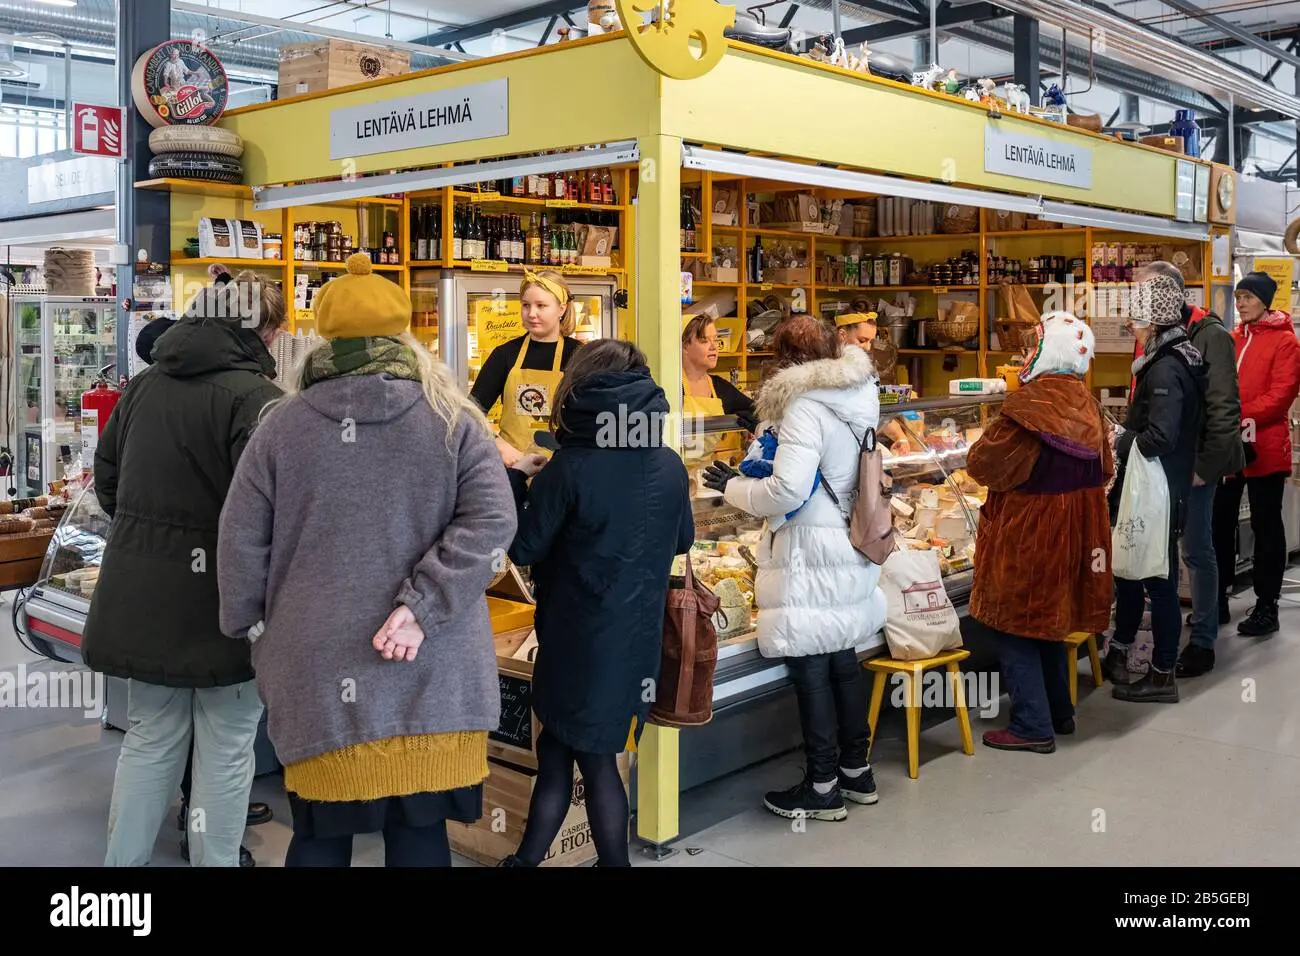 puestos de venta ambulante de quesos - Qué es un mercado ambulante